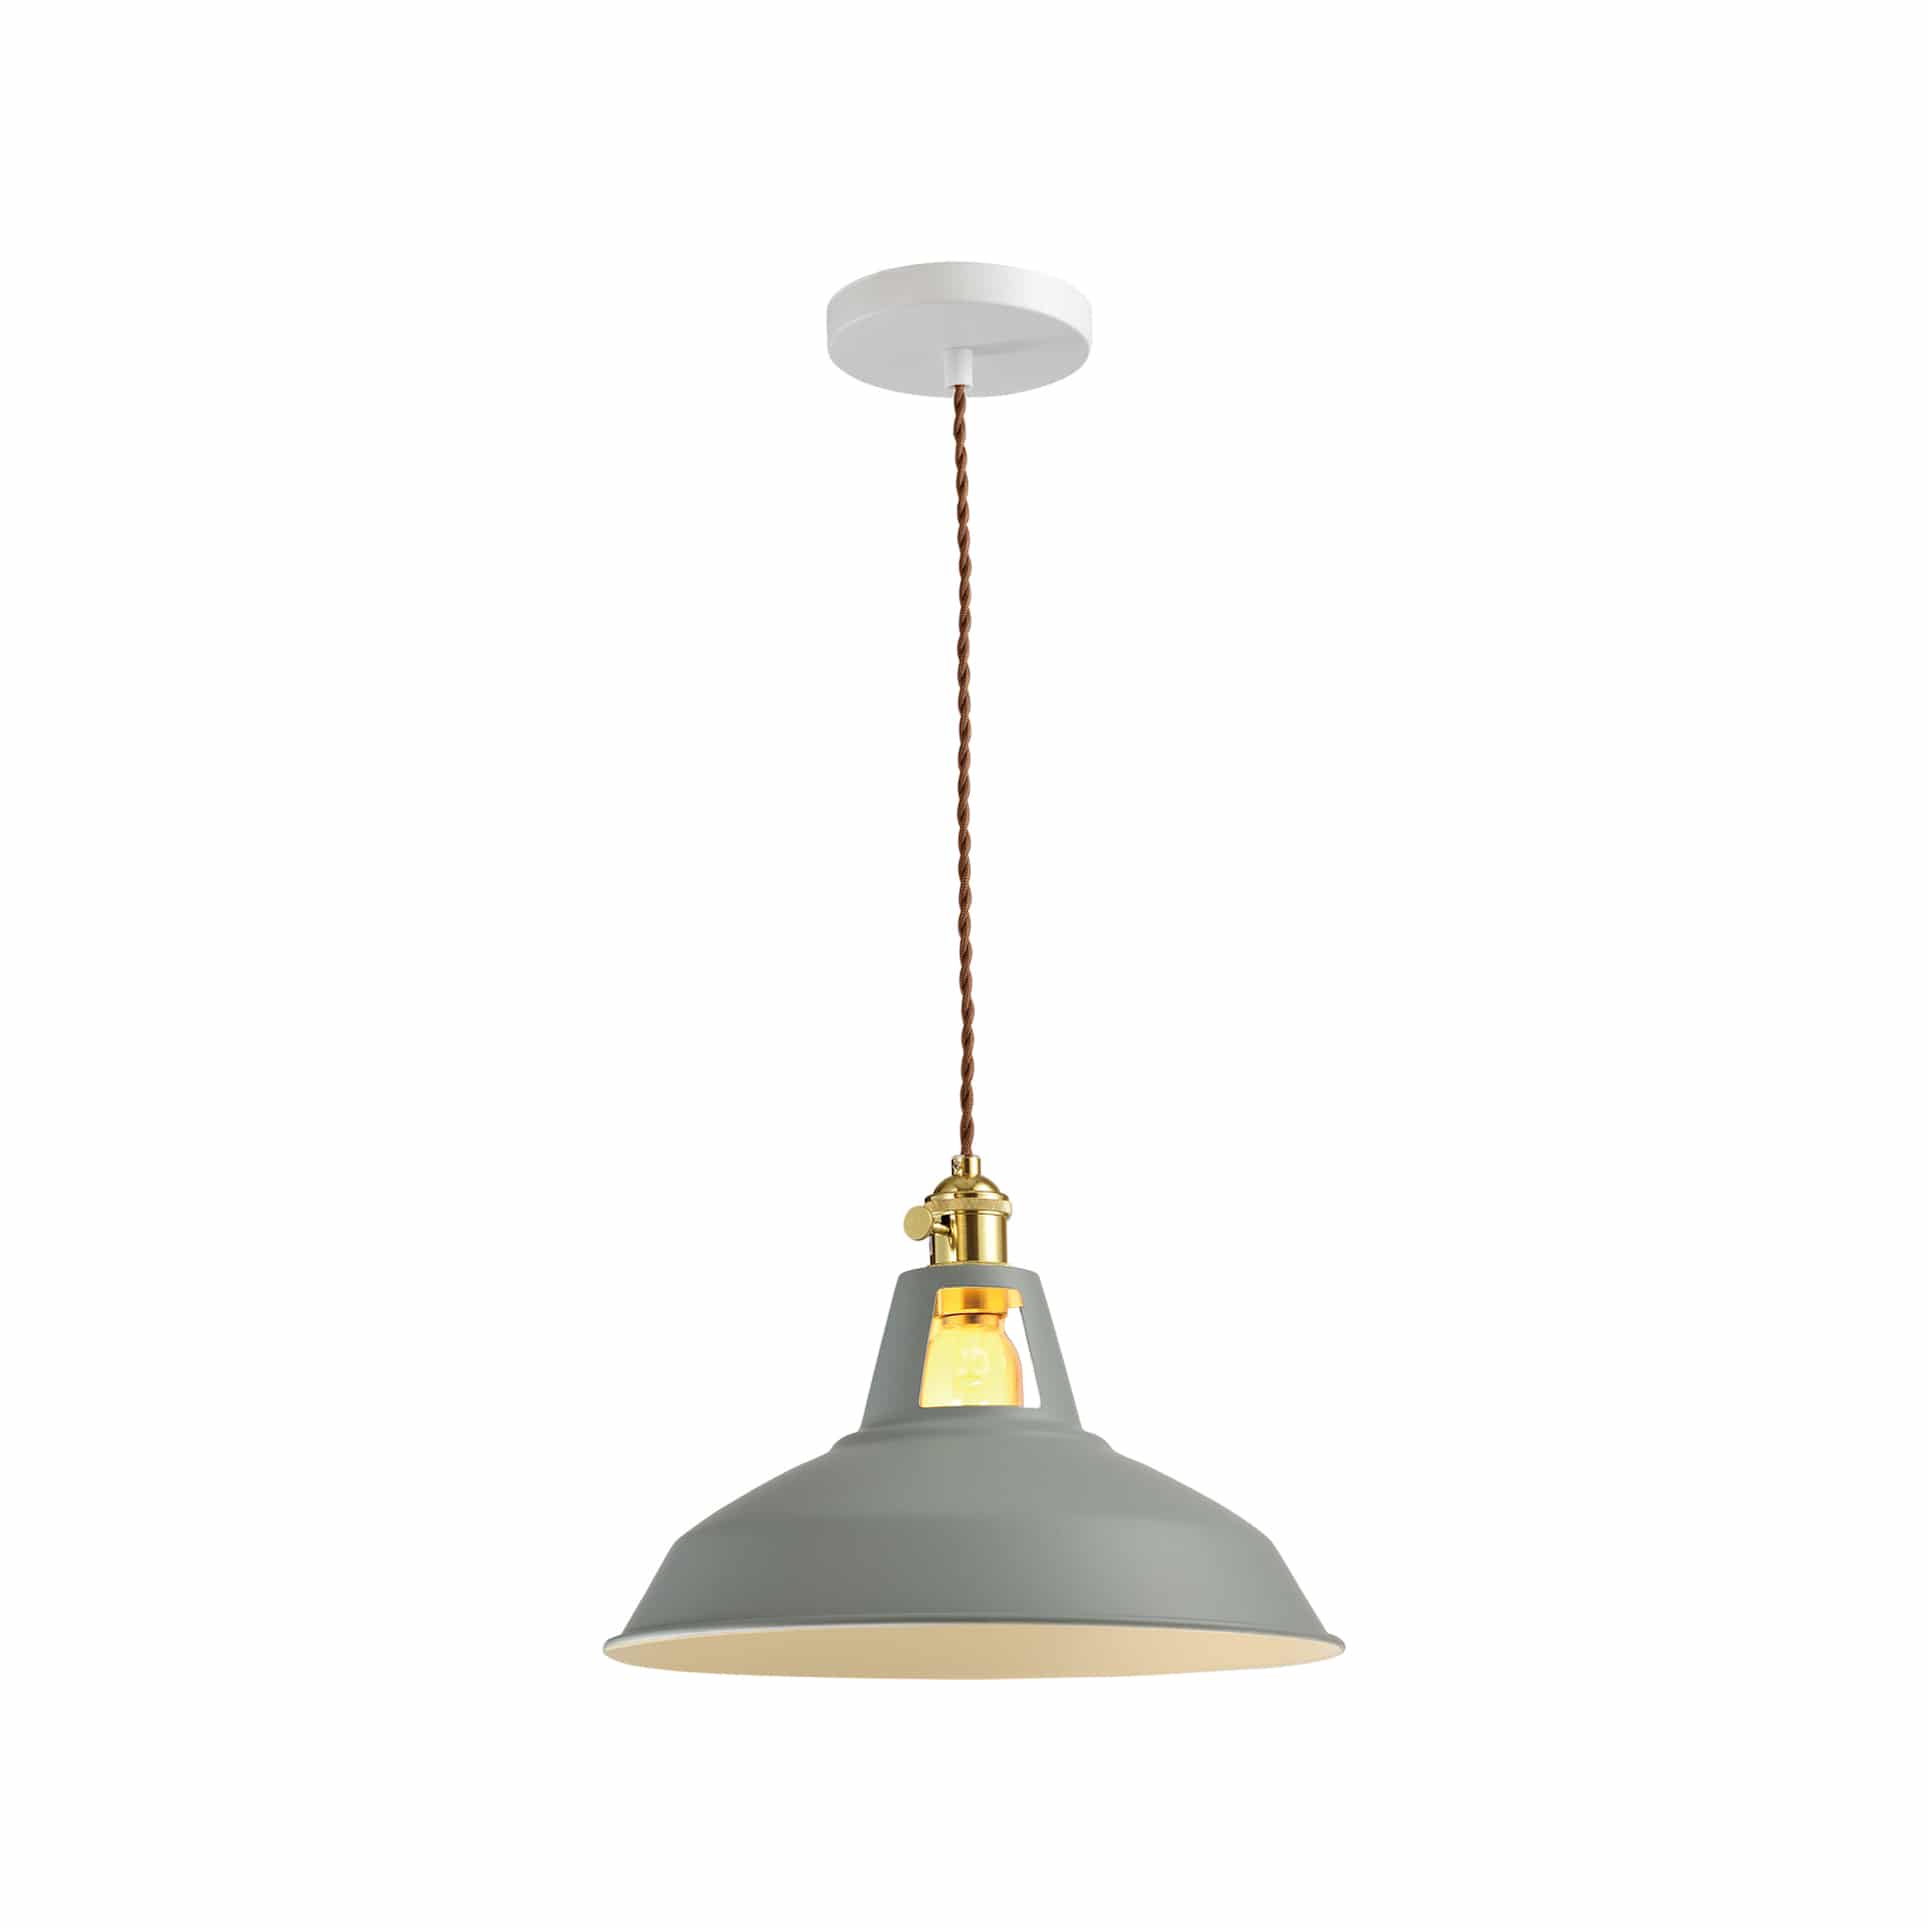 QUVIO Hanglamp industrieel - Open bovenkant kap - Diameter 31 cm - Grijs met groene gloed